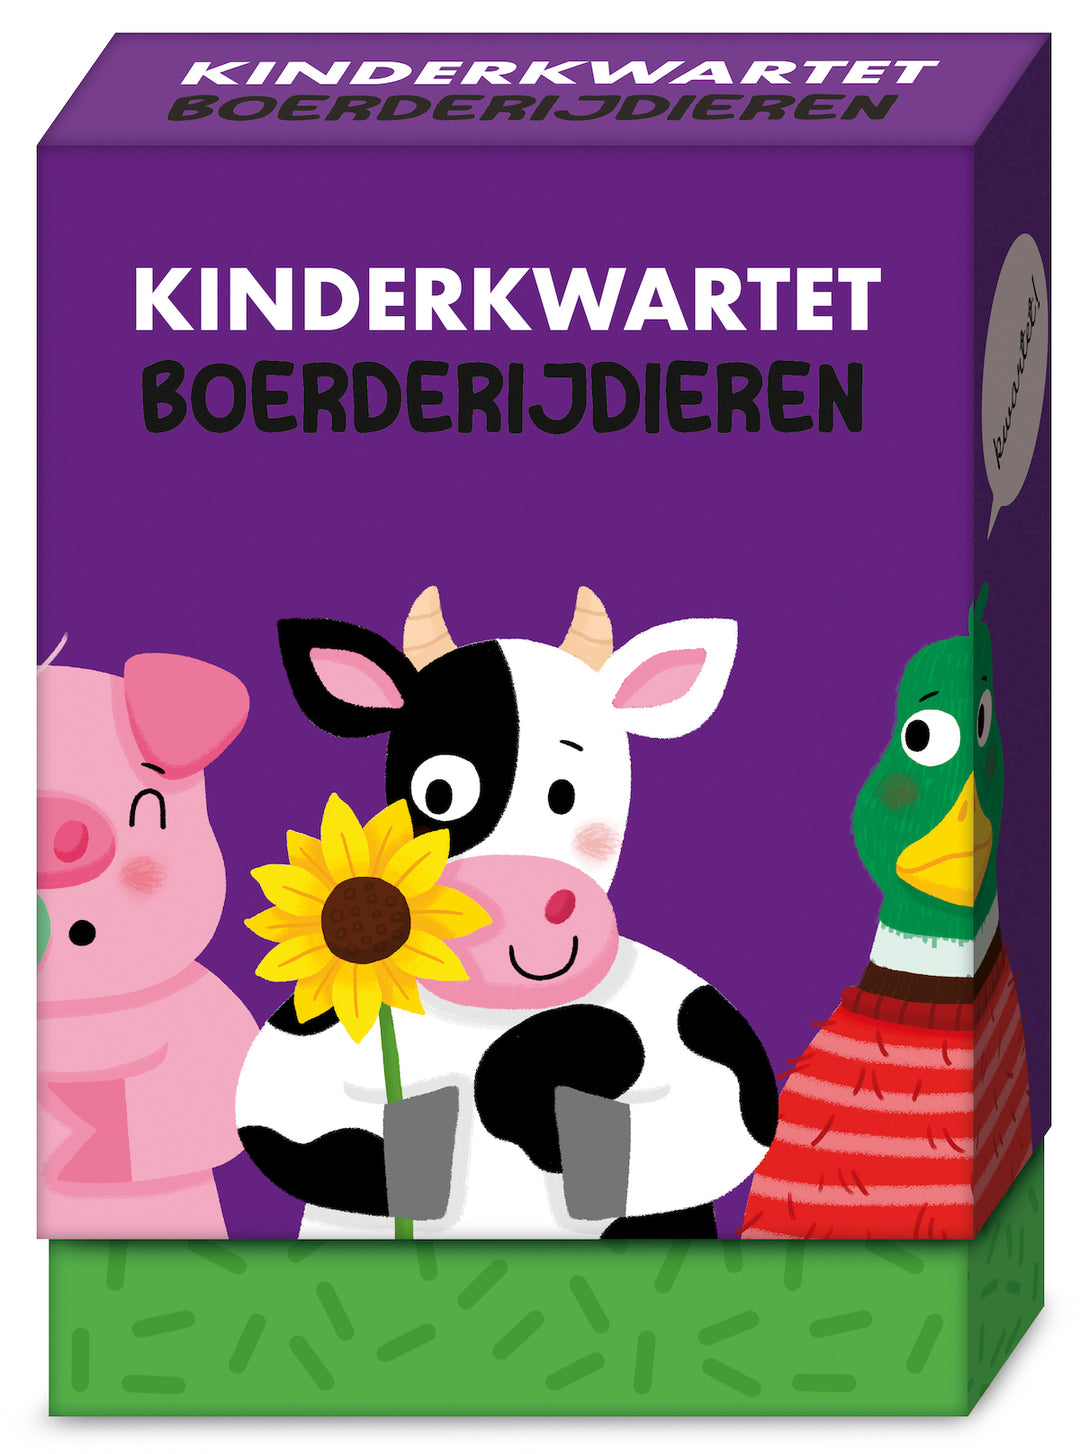 Imagebooks Kinderkwartet Boerderijdieren, een klassiek kwartetspel voor 2-4 spelers, ideaal voor reizen